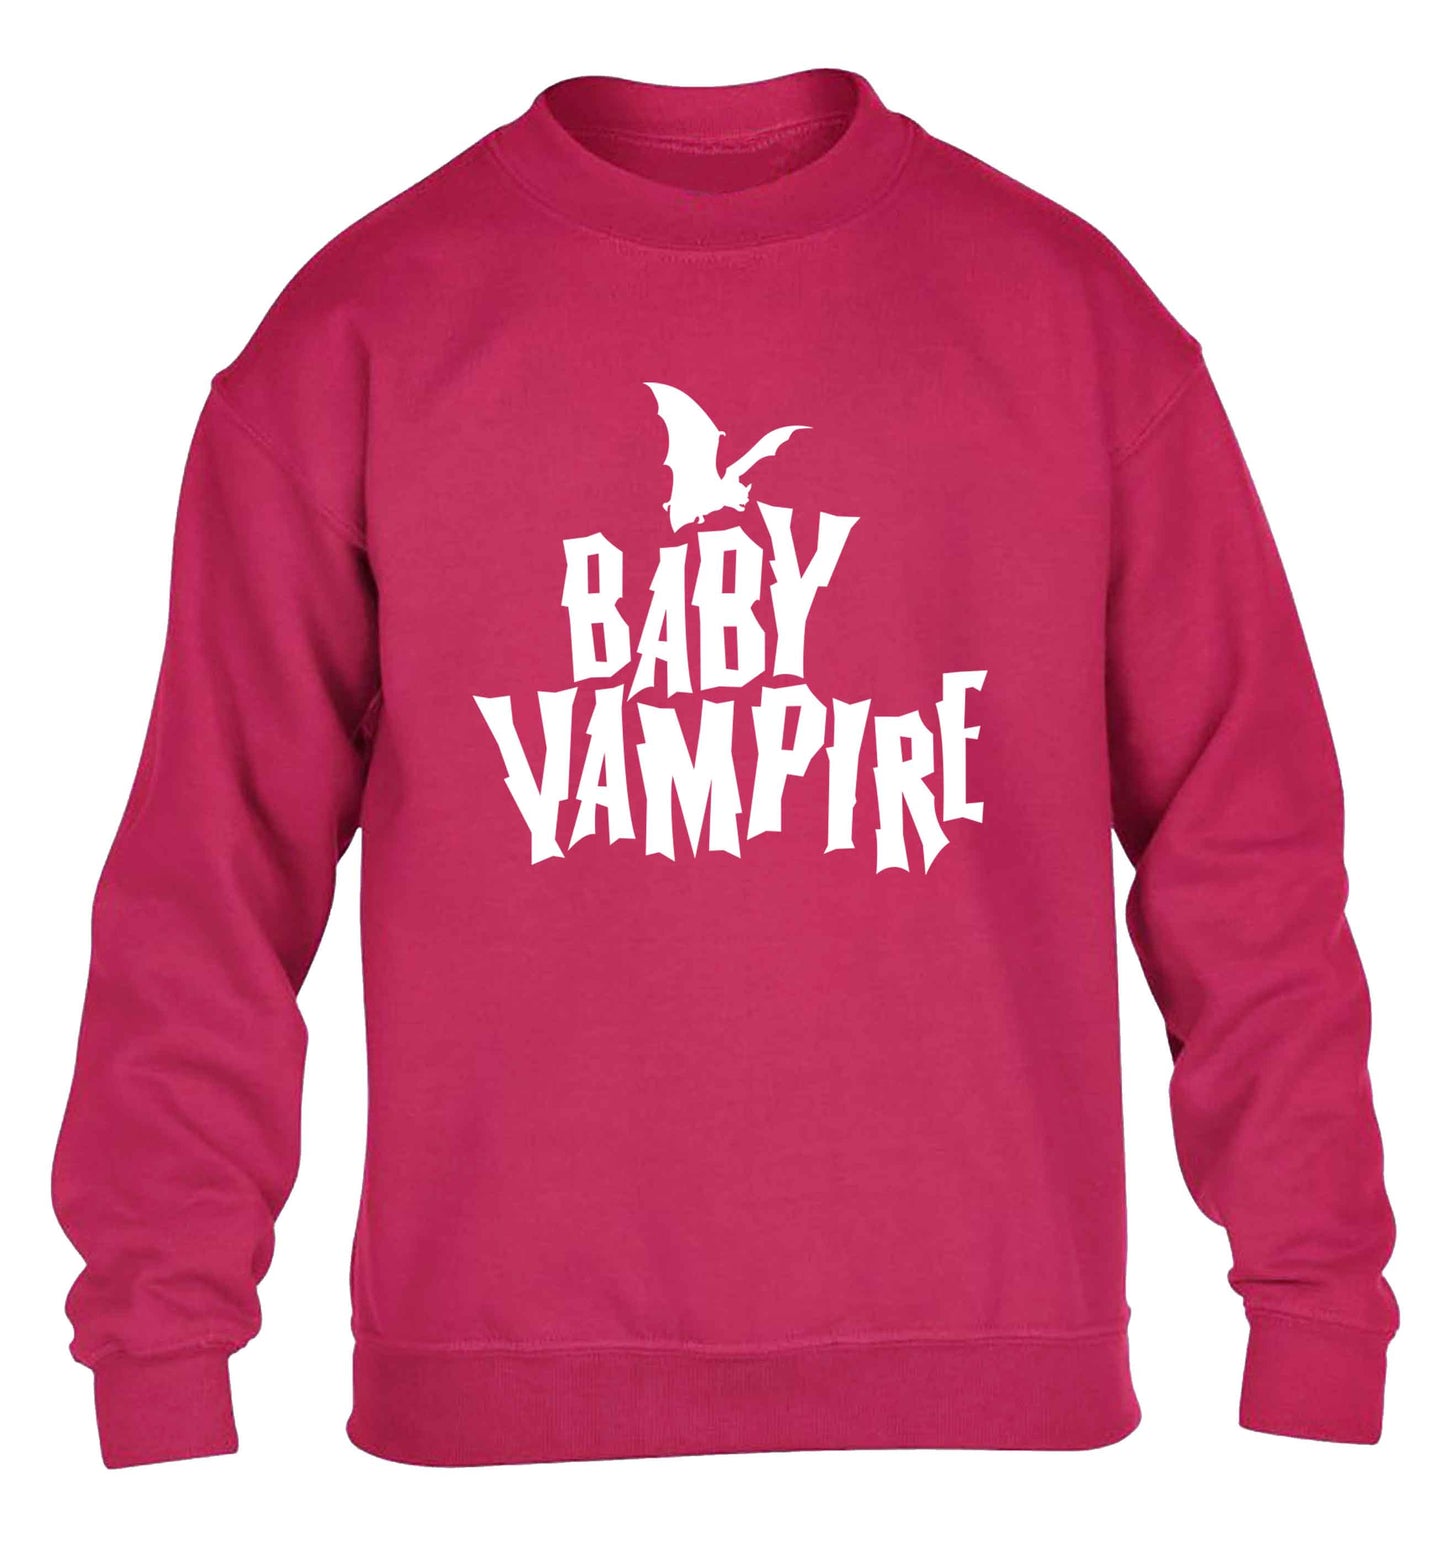 Baby vampire children's pink sweater 12-13 Years